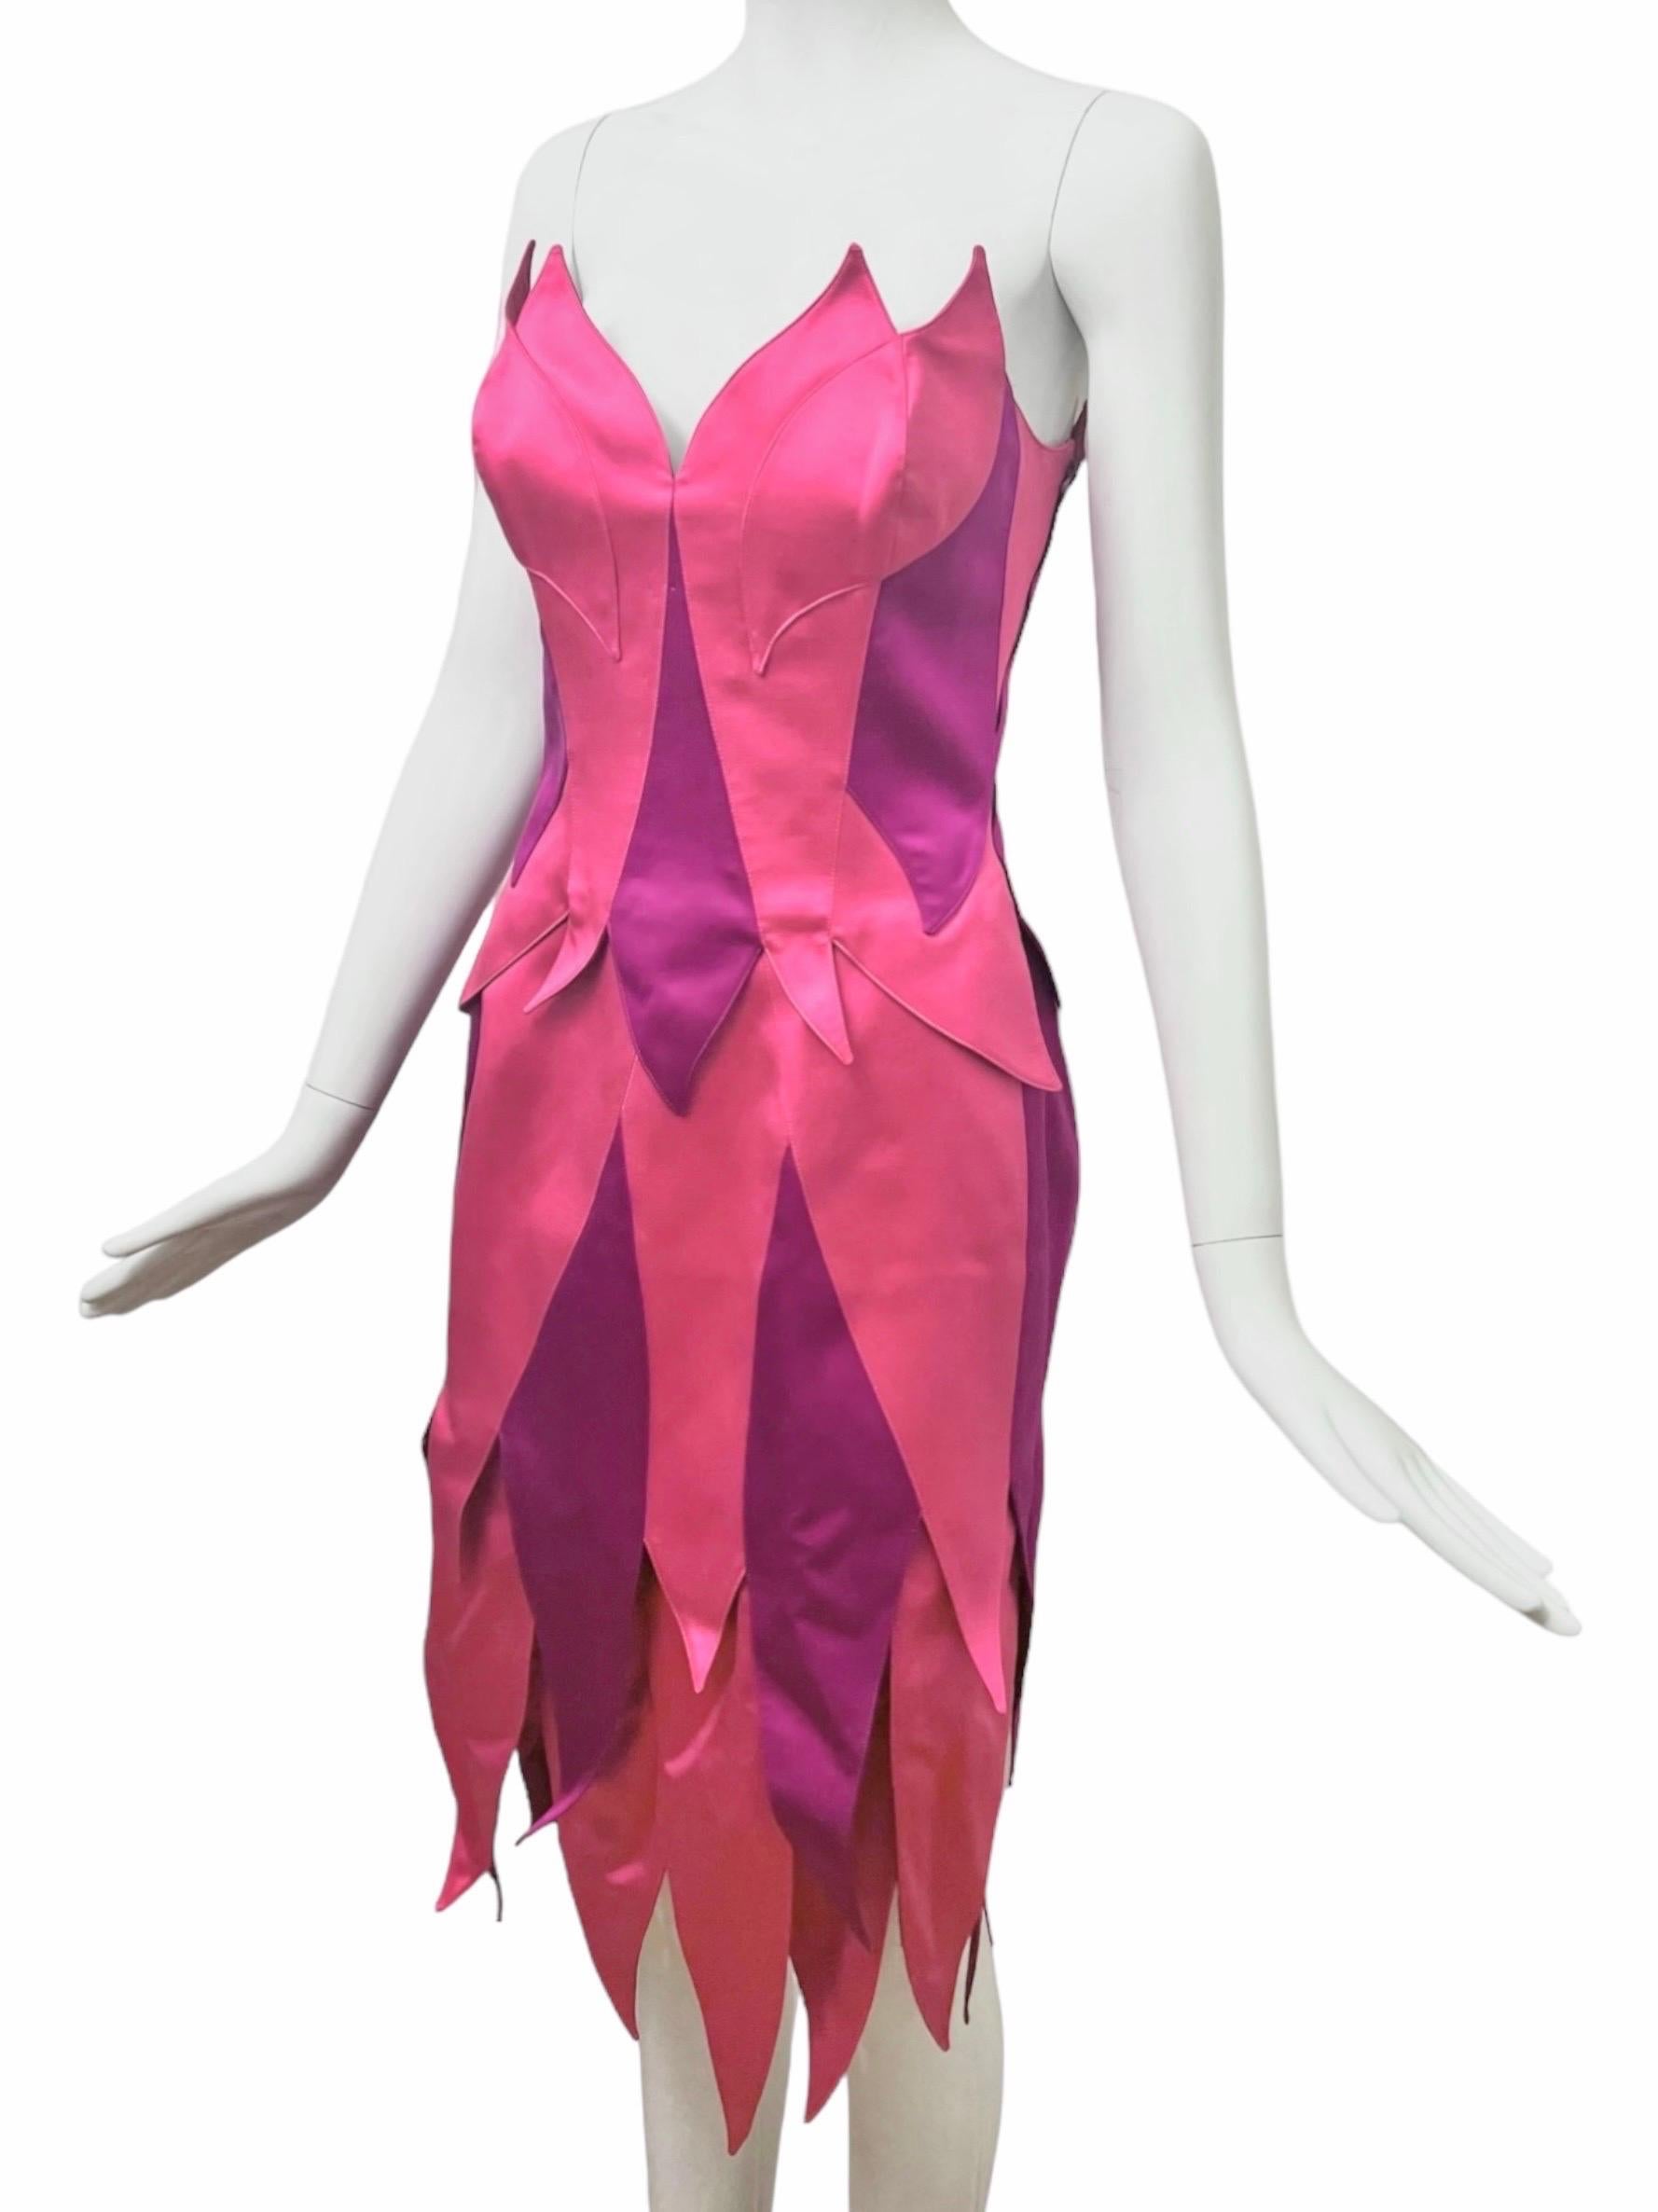 Cet ensemble bustier et jupe de Thierry Mugler Couture est une véritable révélation. Ce rare ensemble deux pièces en soie présente un motif coloré frappant dans des tons riches et vibrants de rose et de violet, ressemblant à une fée. 

Construit